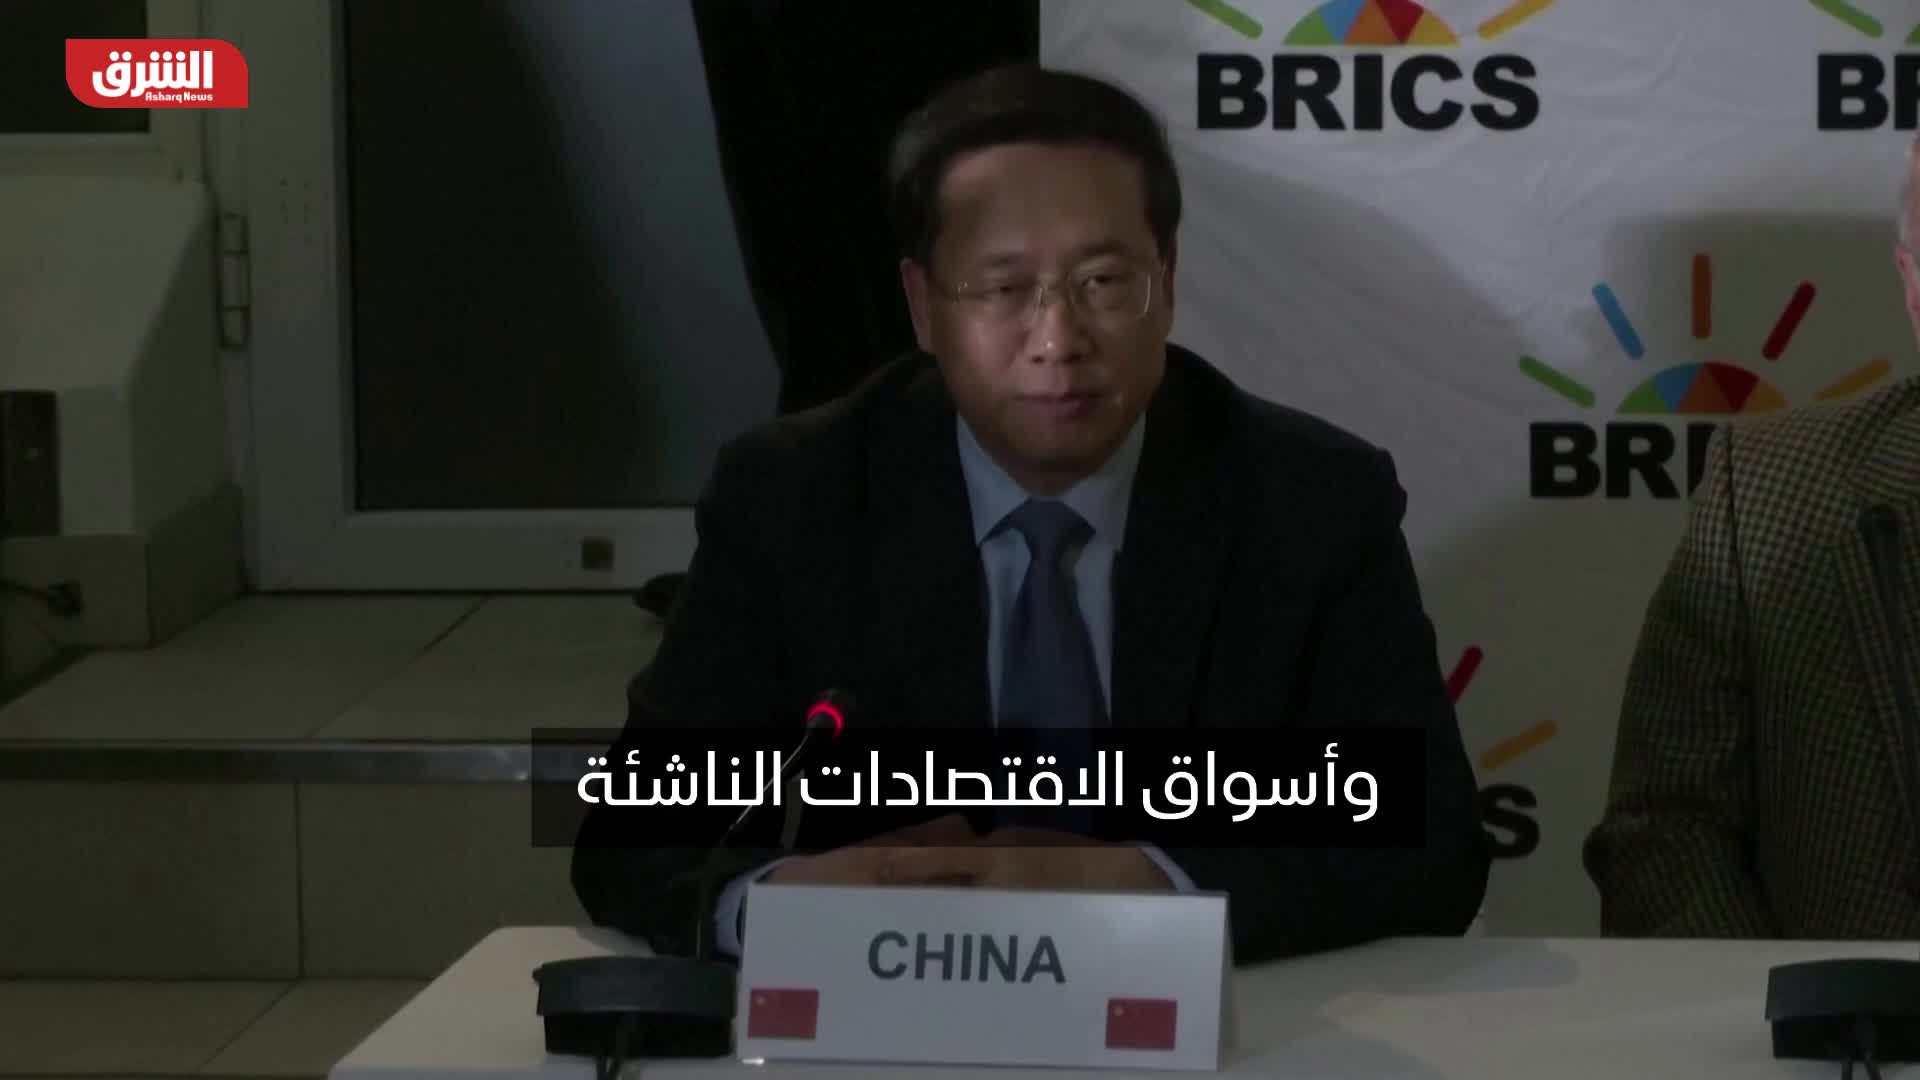 نائب الخارجية الصيني: توسع بريكس سيكون مفيدا لدول المجموعة وللدول النامية